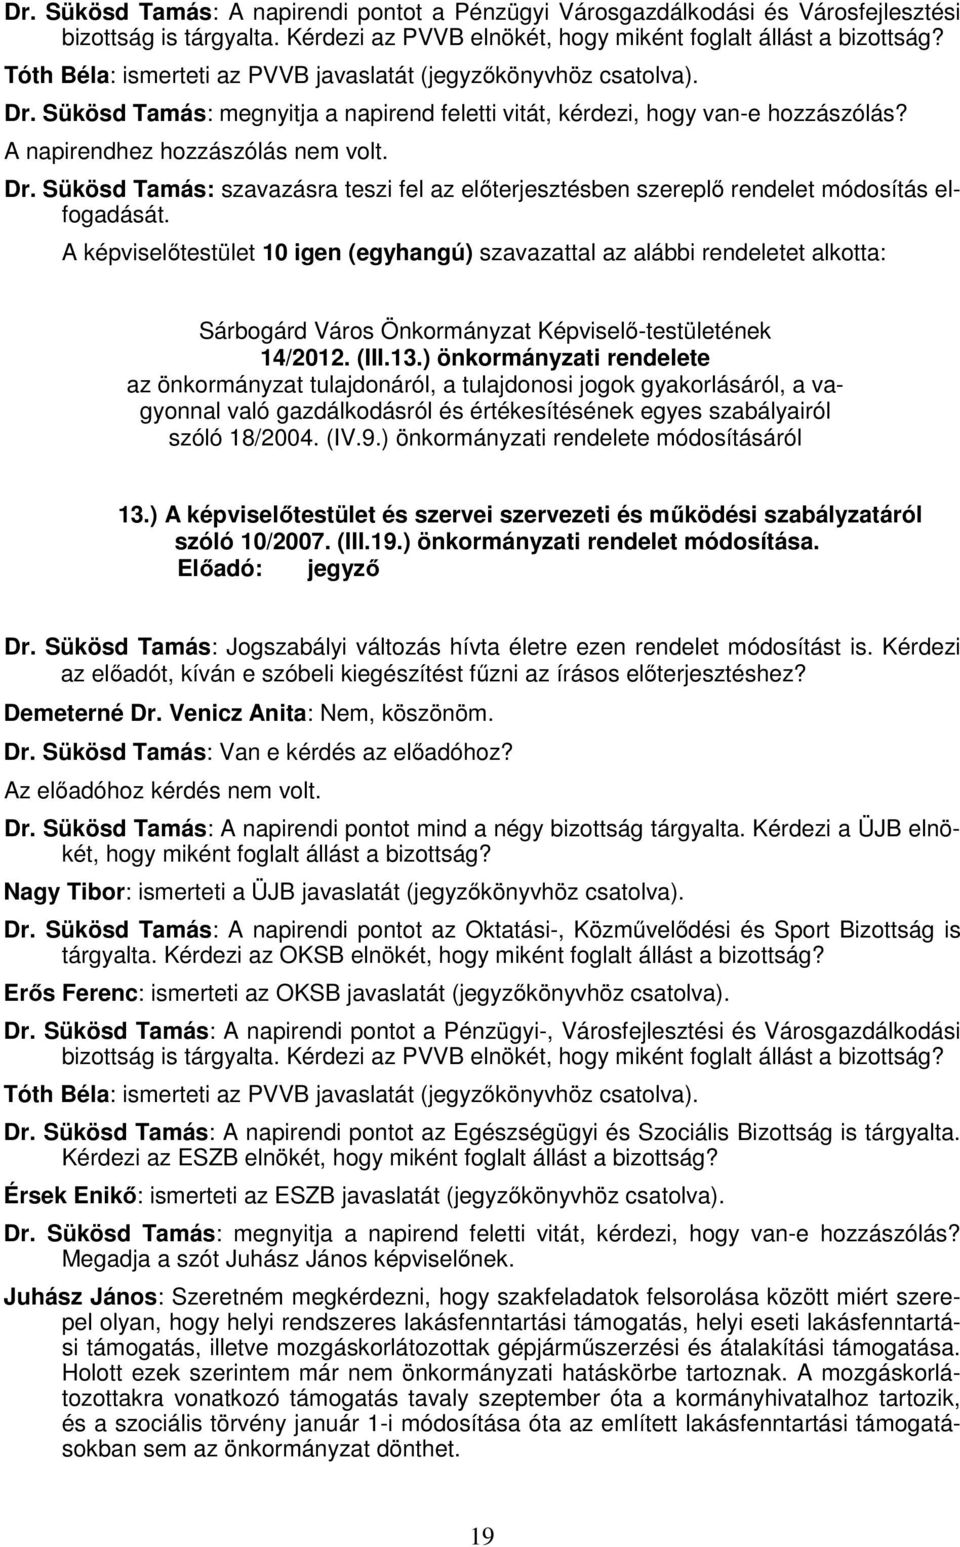 A képviselőtestület 10 igen (egyhangú) szavazattal az alábbi rendeletet alkotta: Sárbogárd Város Önkormányzat Képviselő-testületének 14/2012. (III.13.